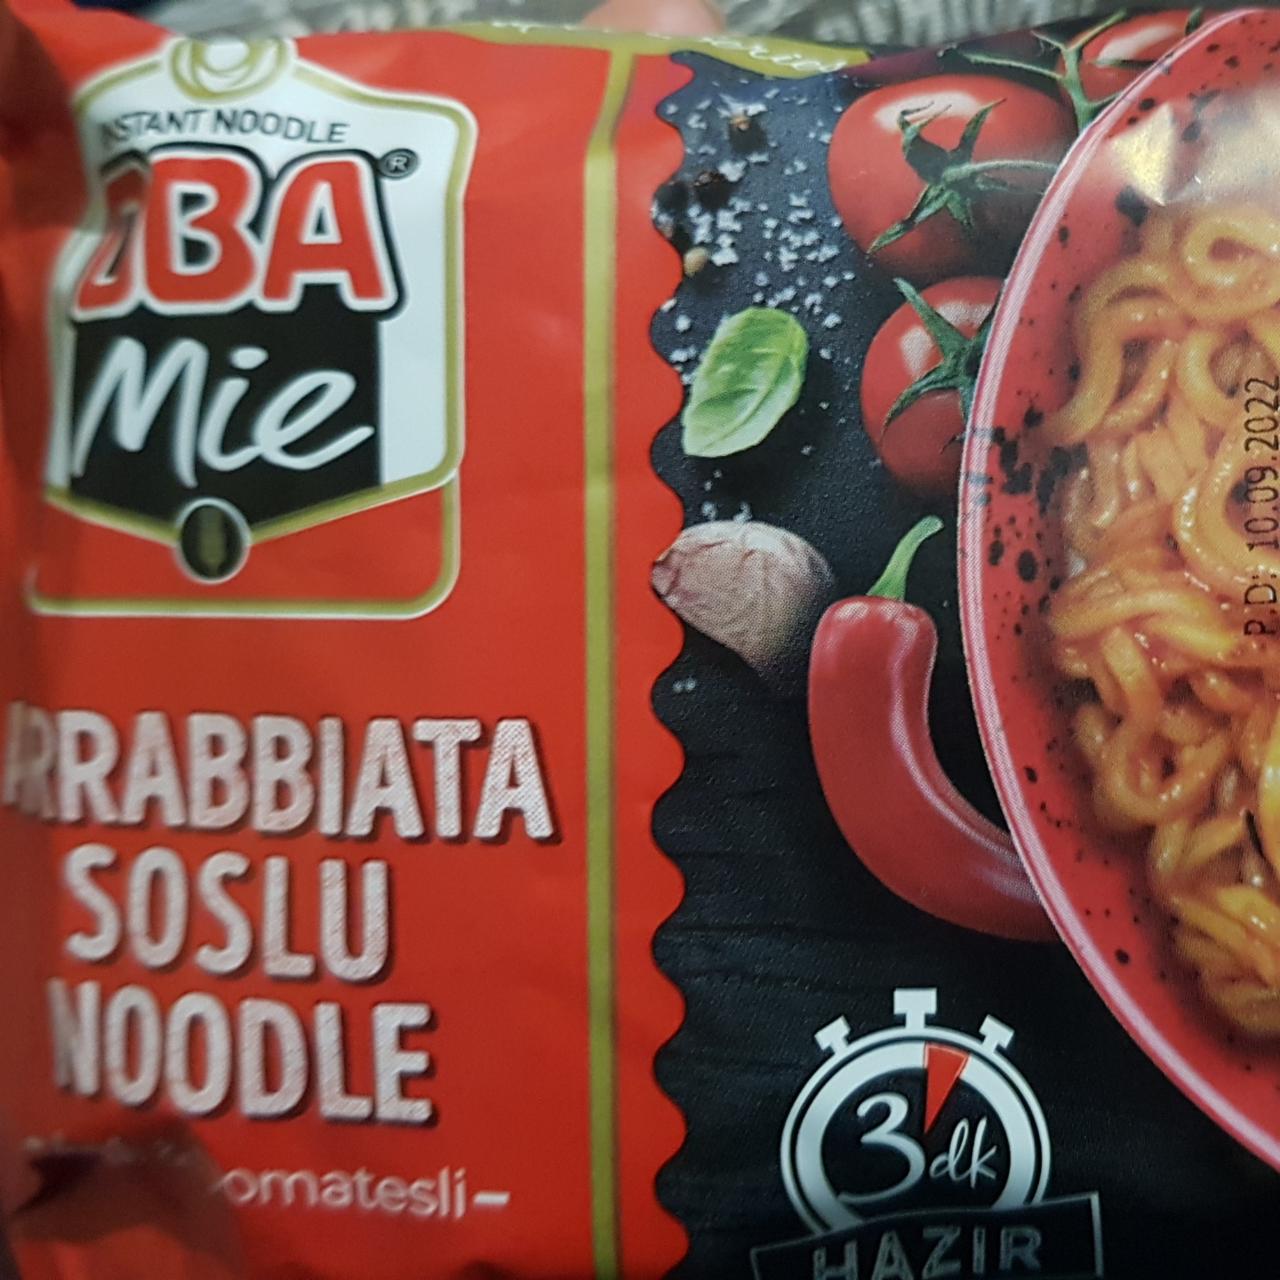 Фото - лапша быстрого приготовления Arabbiata Soslu Noodle Oba Mie